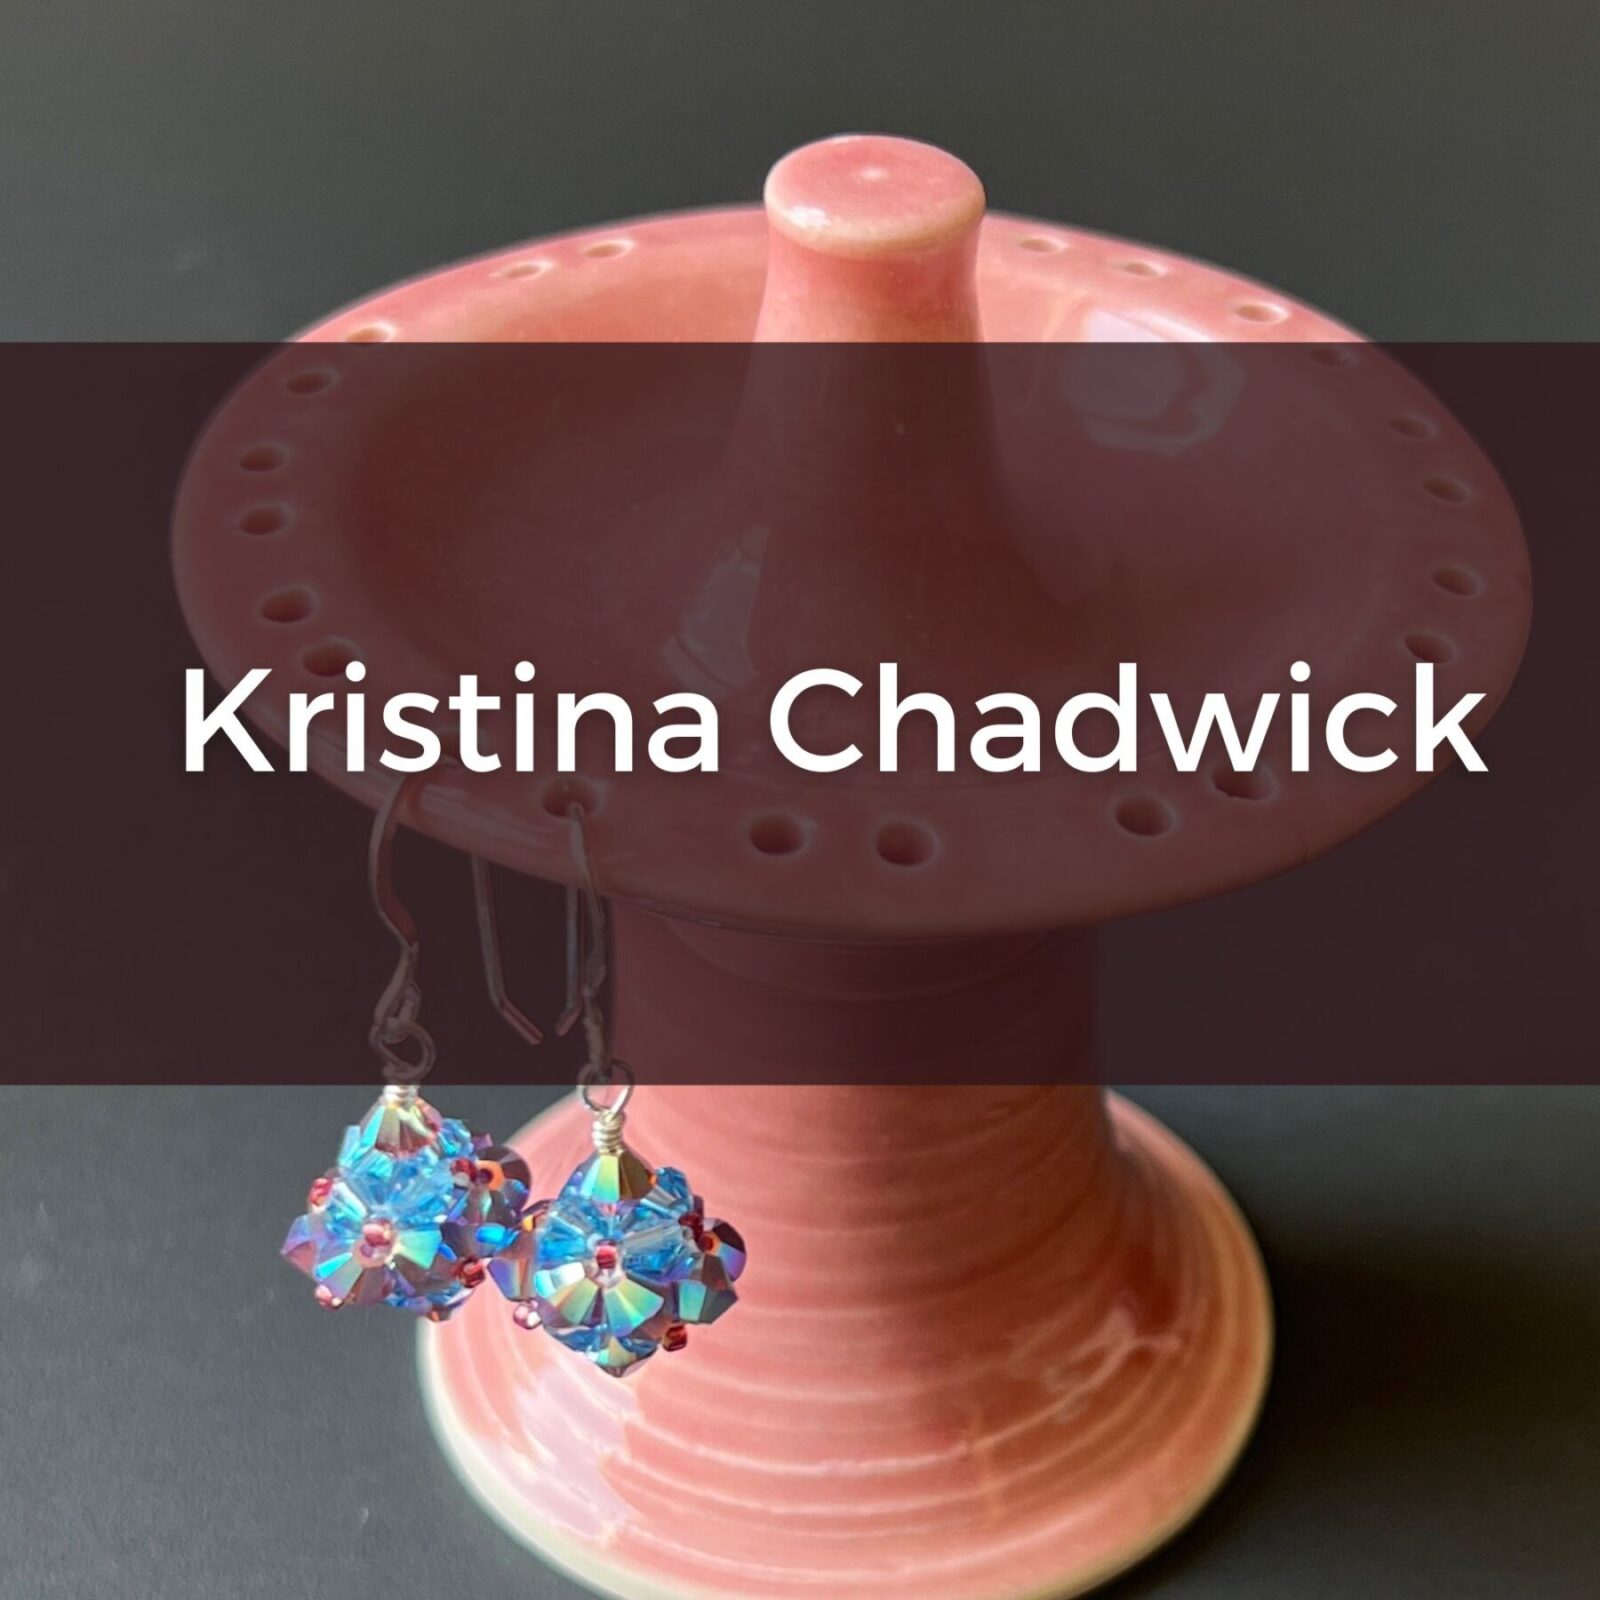 Kristina Chadwick, jewelry and pottery